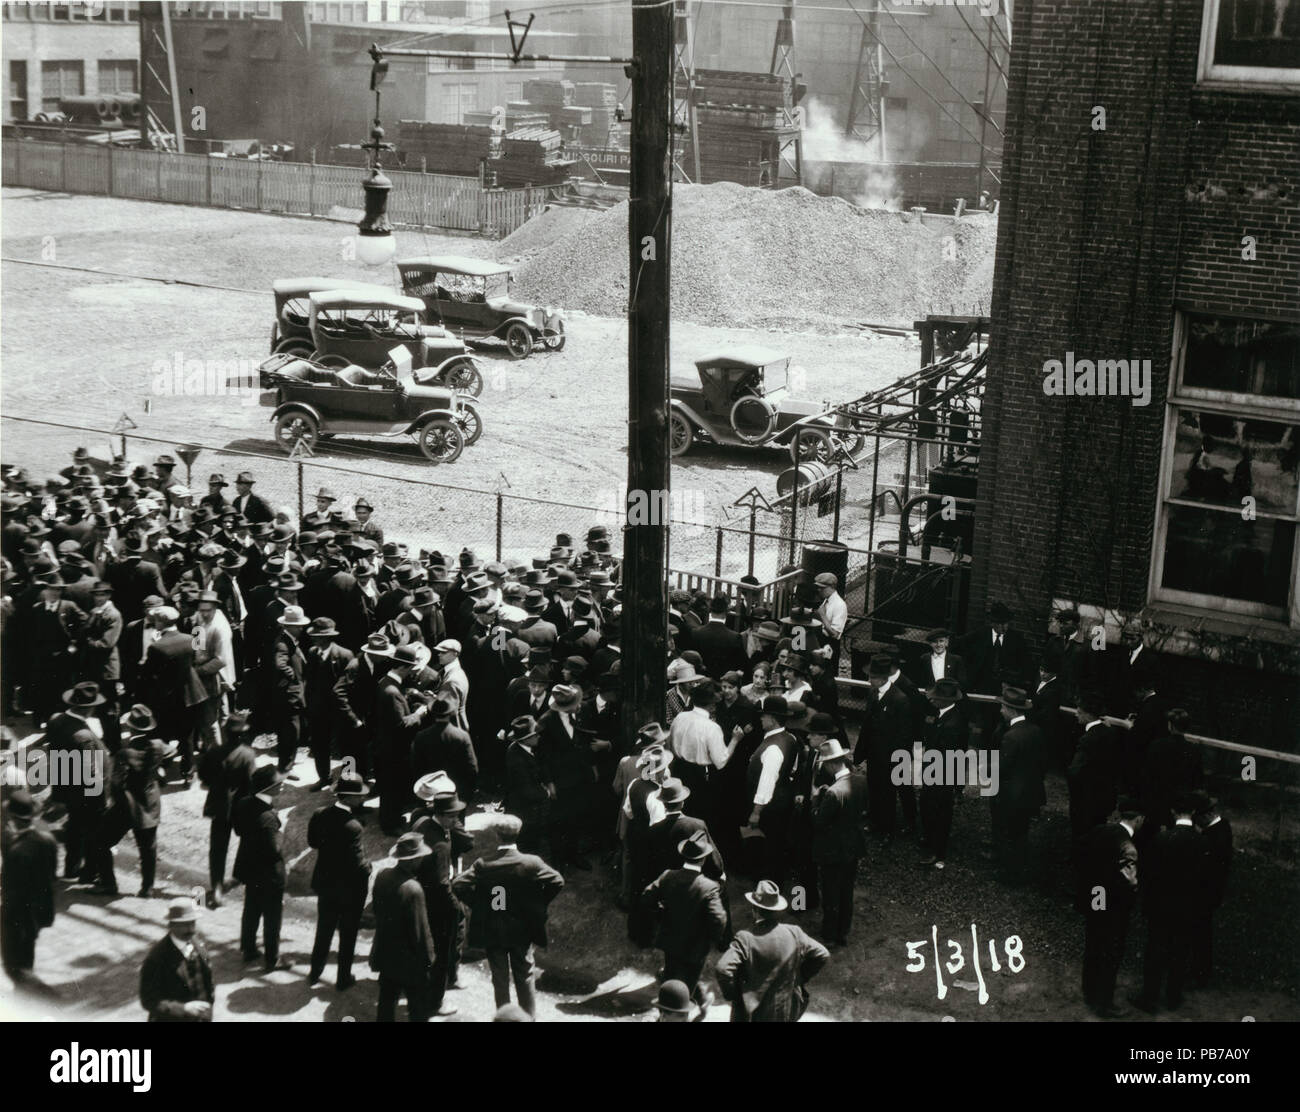 1828 Wagner Electric Company Streik, mehrere Menschen versammelt, außerhalb von Gebäude, einige in der Konfrontation stellt, wie Sie mit einander unterhalten. 3. Mai 1918 Stockfoto